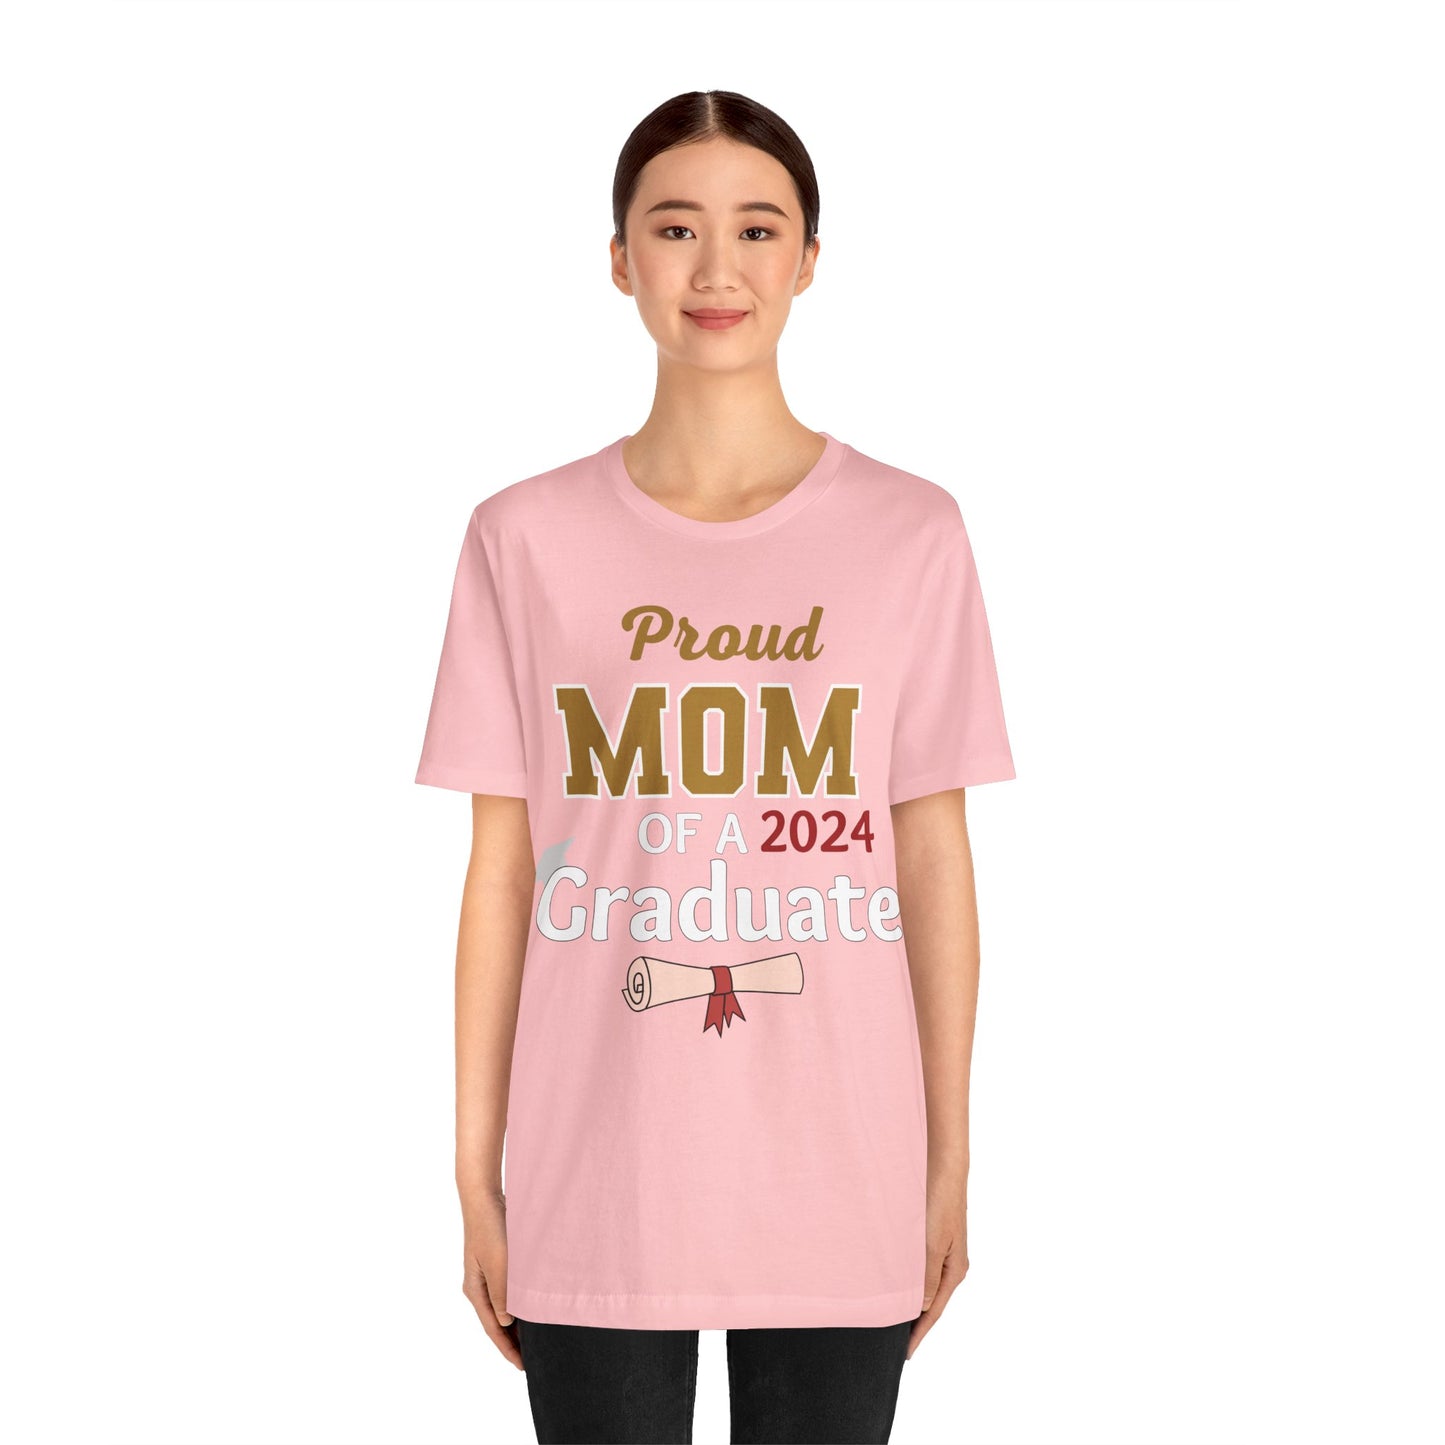 Proud Mom of 2024 Graduate Shirt - Graduation Shirt for Mom